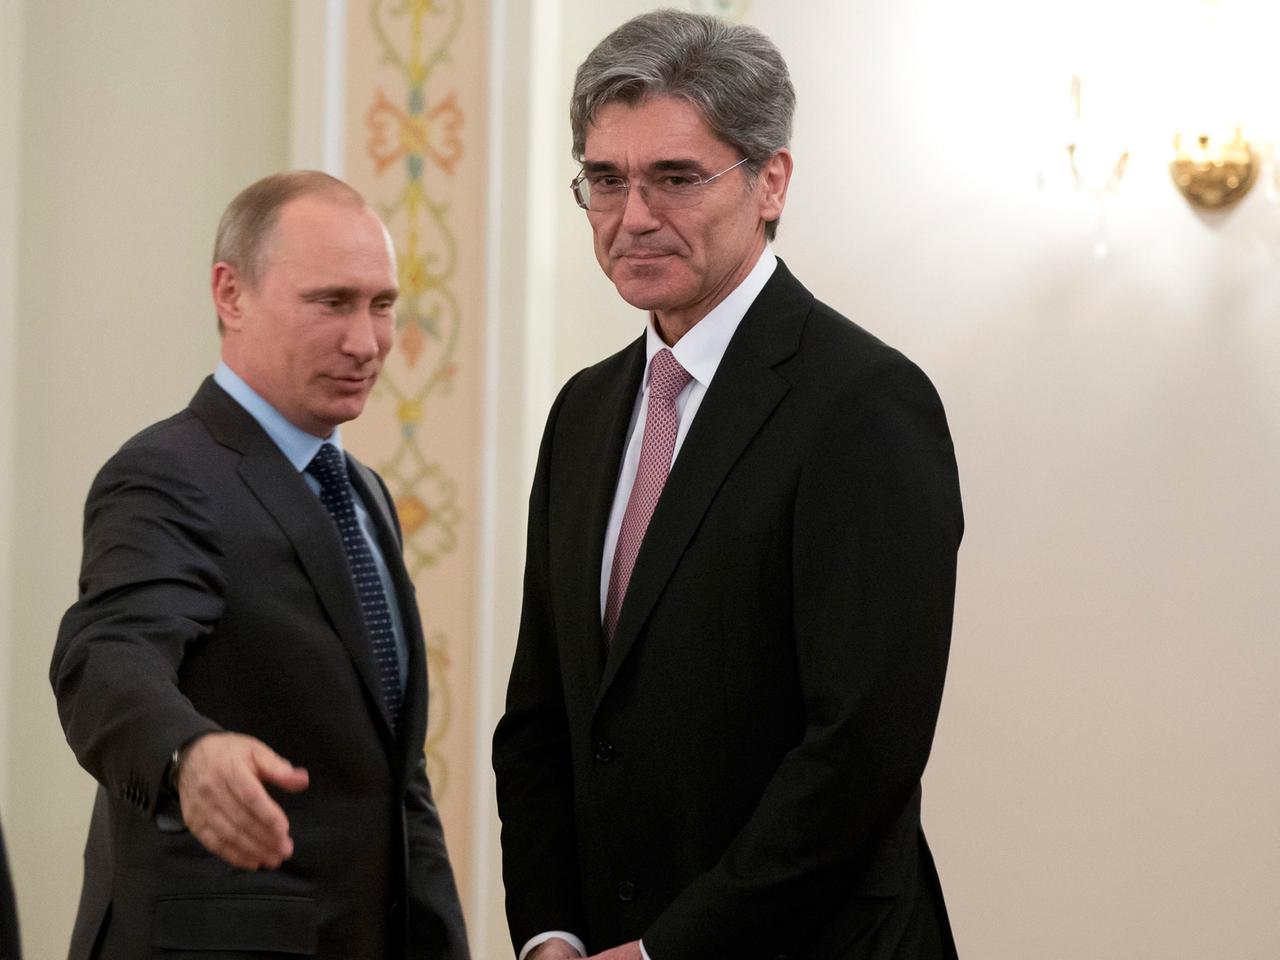 Joe Kaeser und Wladimir Putin, beide im Anzug, stehend, Putin macht eine einladende Armbewegung.